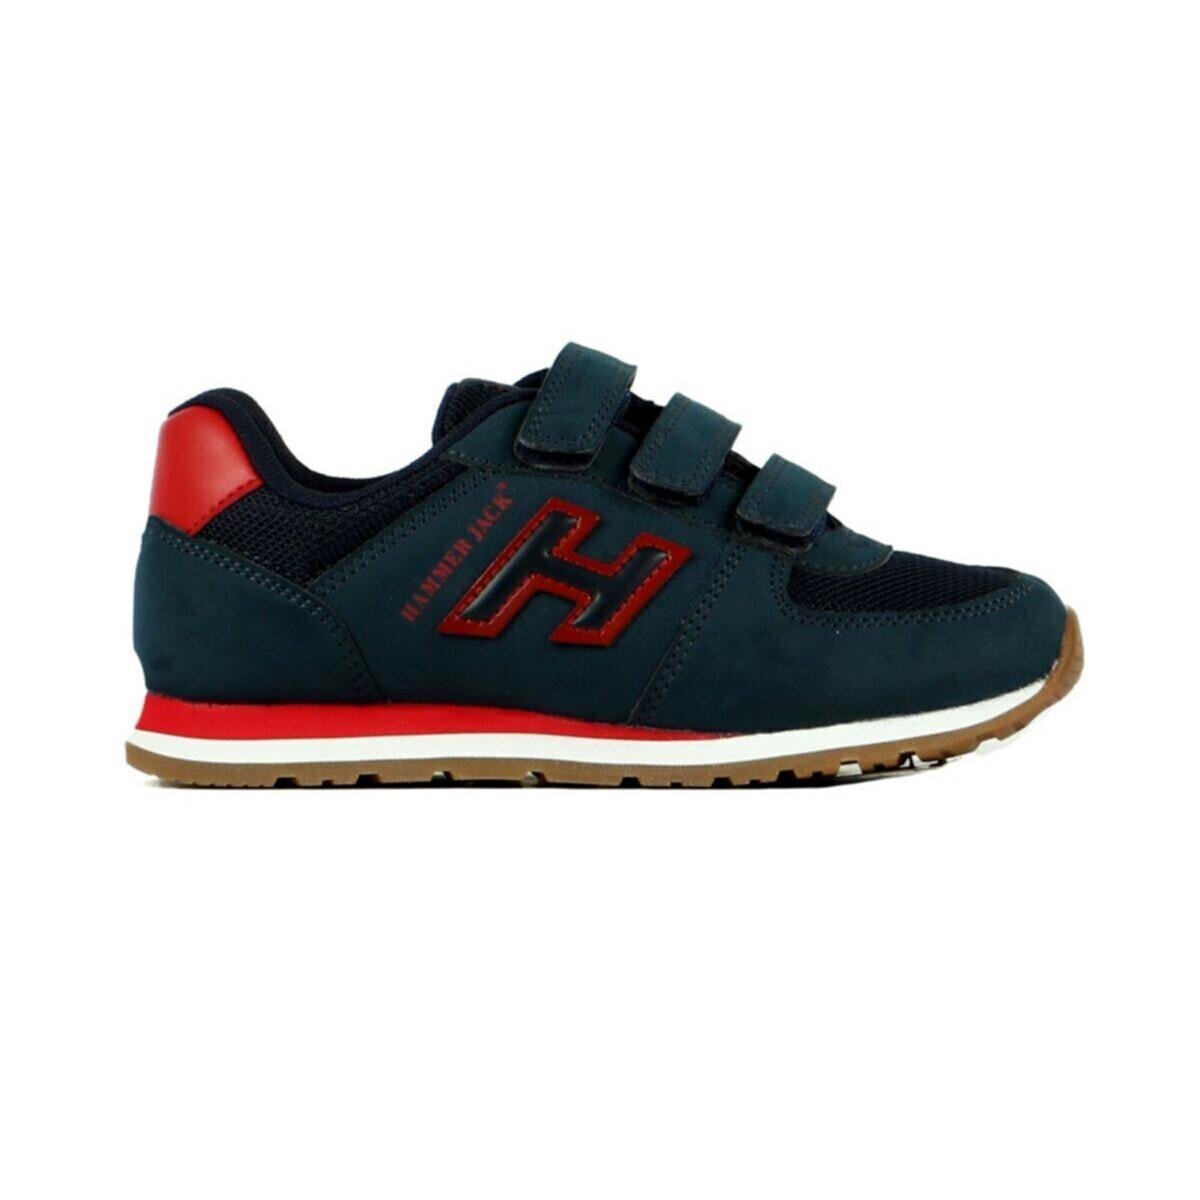 HAMMER JACK 19250 Lacivert Kırmızı Erkek Spor Ayakkabı